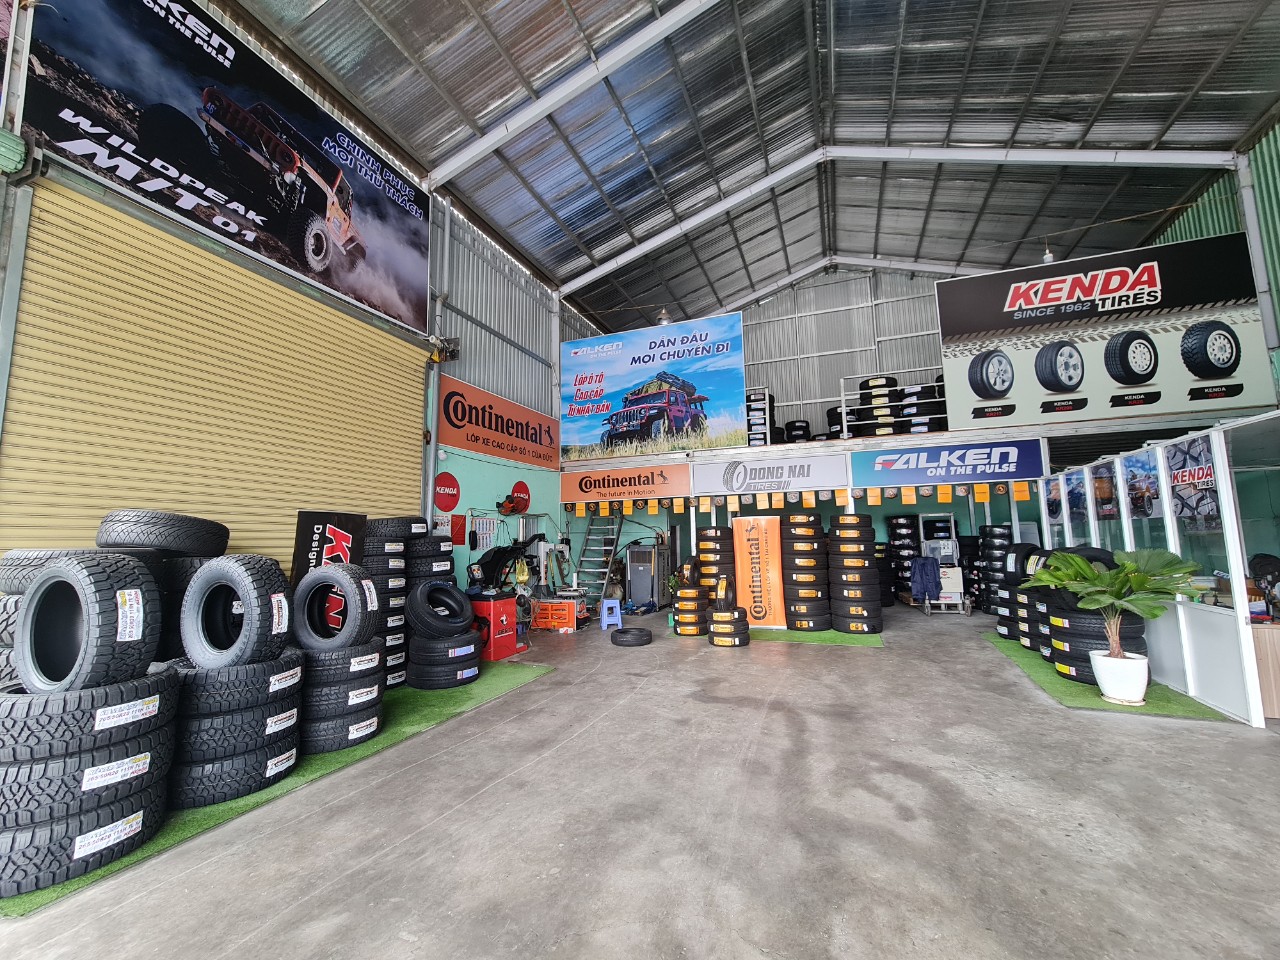 TƯ VẤN : Địa chỉ thay lốp xe Subaru Forester chính hãng - giá tốt ở Biên Hoà, Đồng Nai